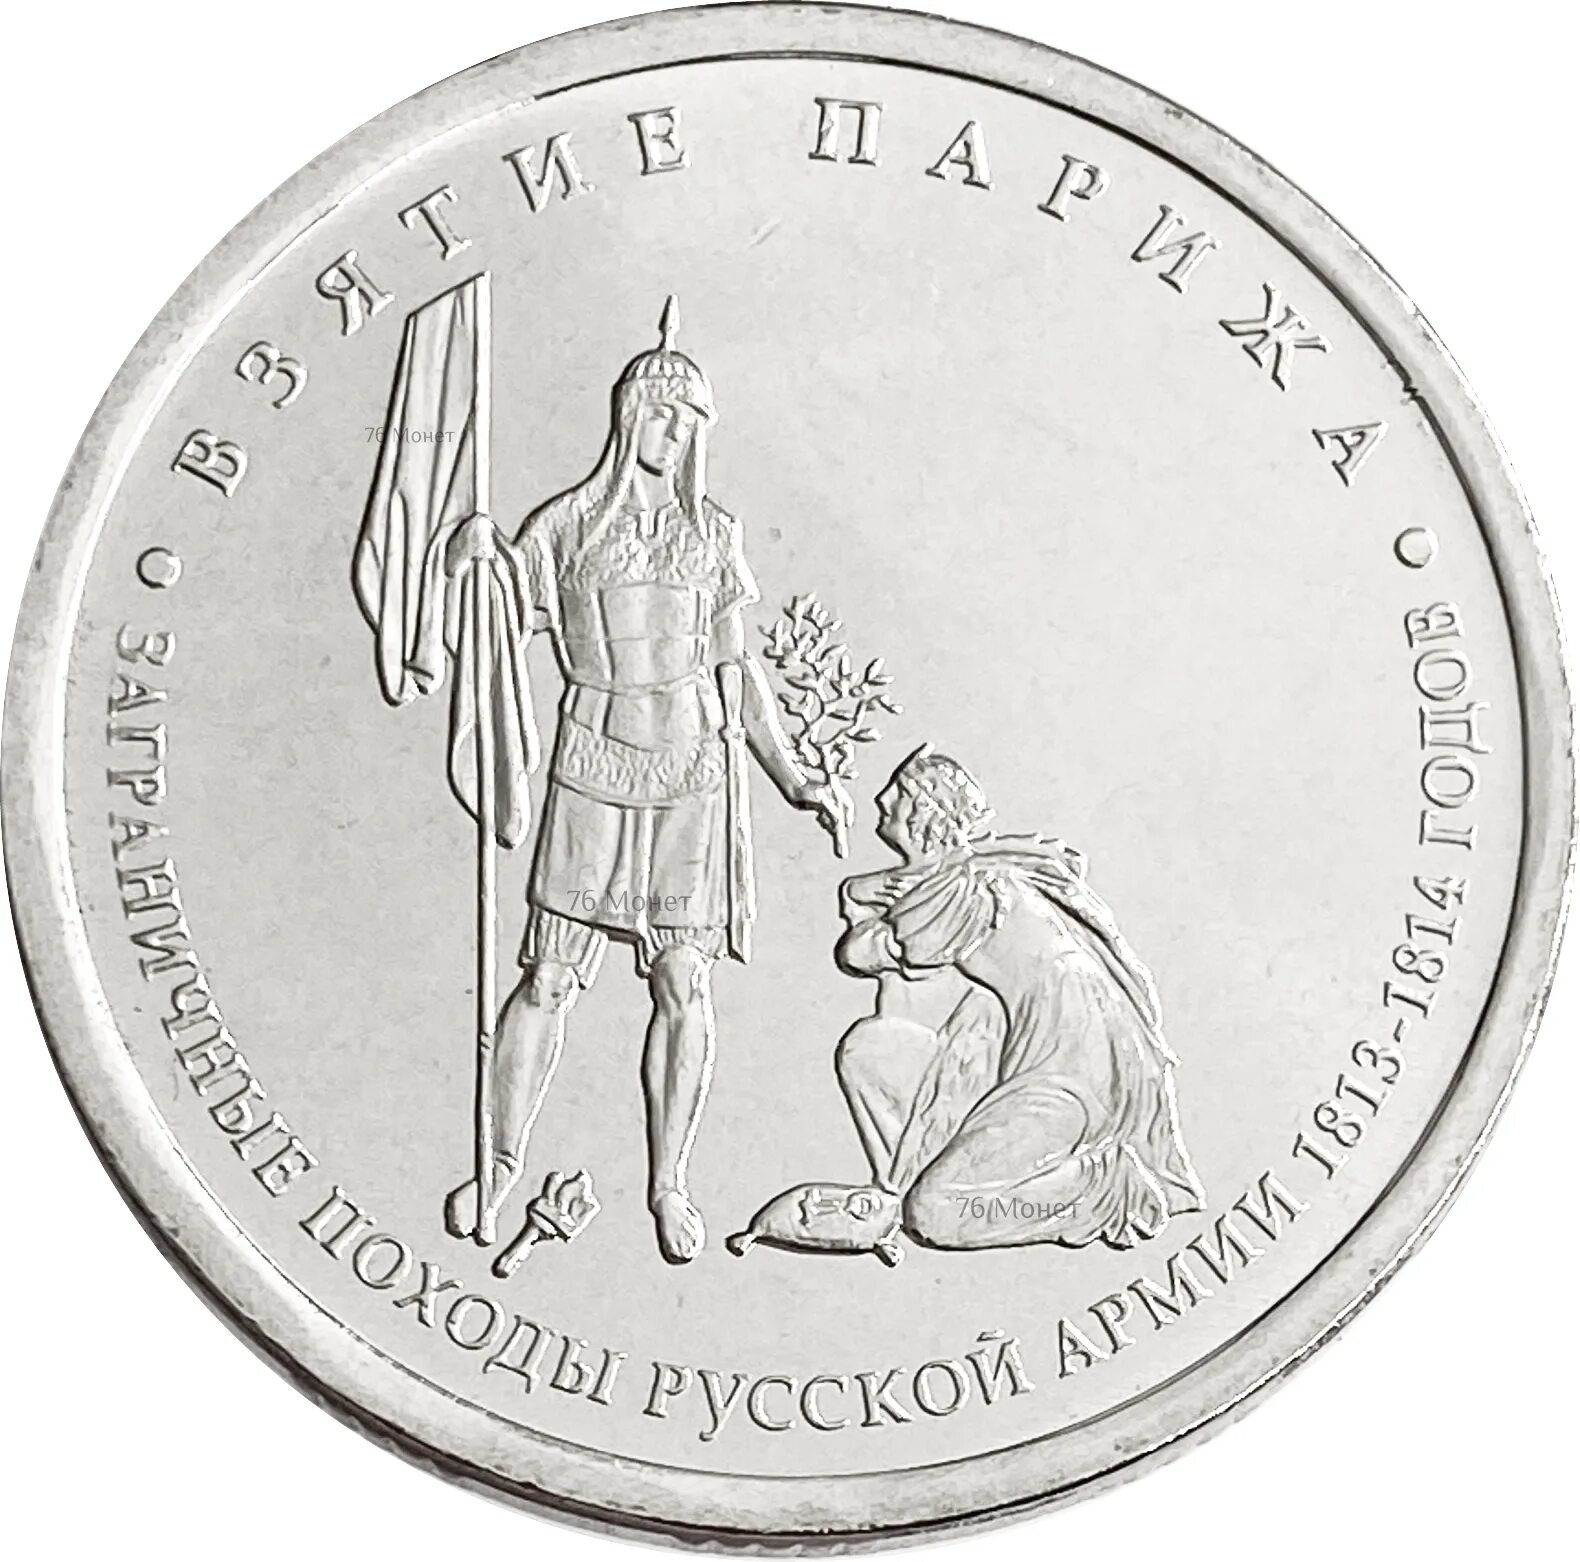 Монета взятие Парижа. 5 Рублей 2012 взятие Парижа. 5 Рублей взятие Парижа. 5 Рублей 200 лет 1812.